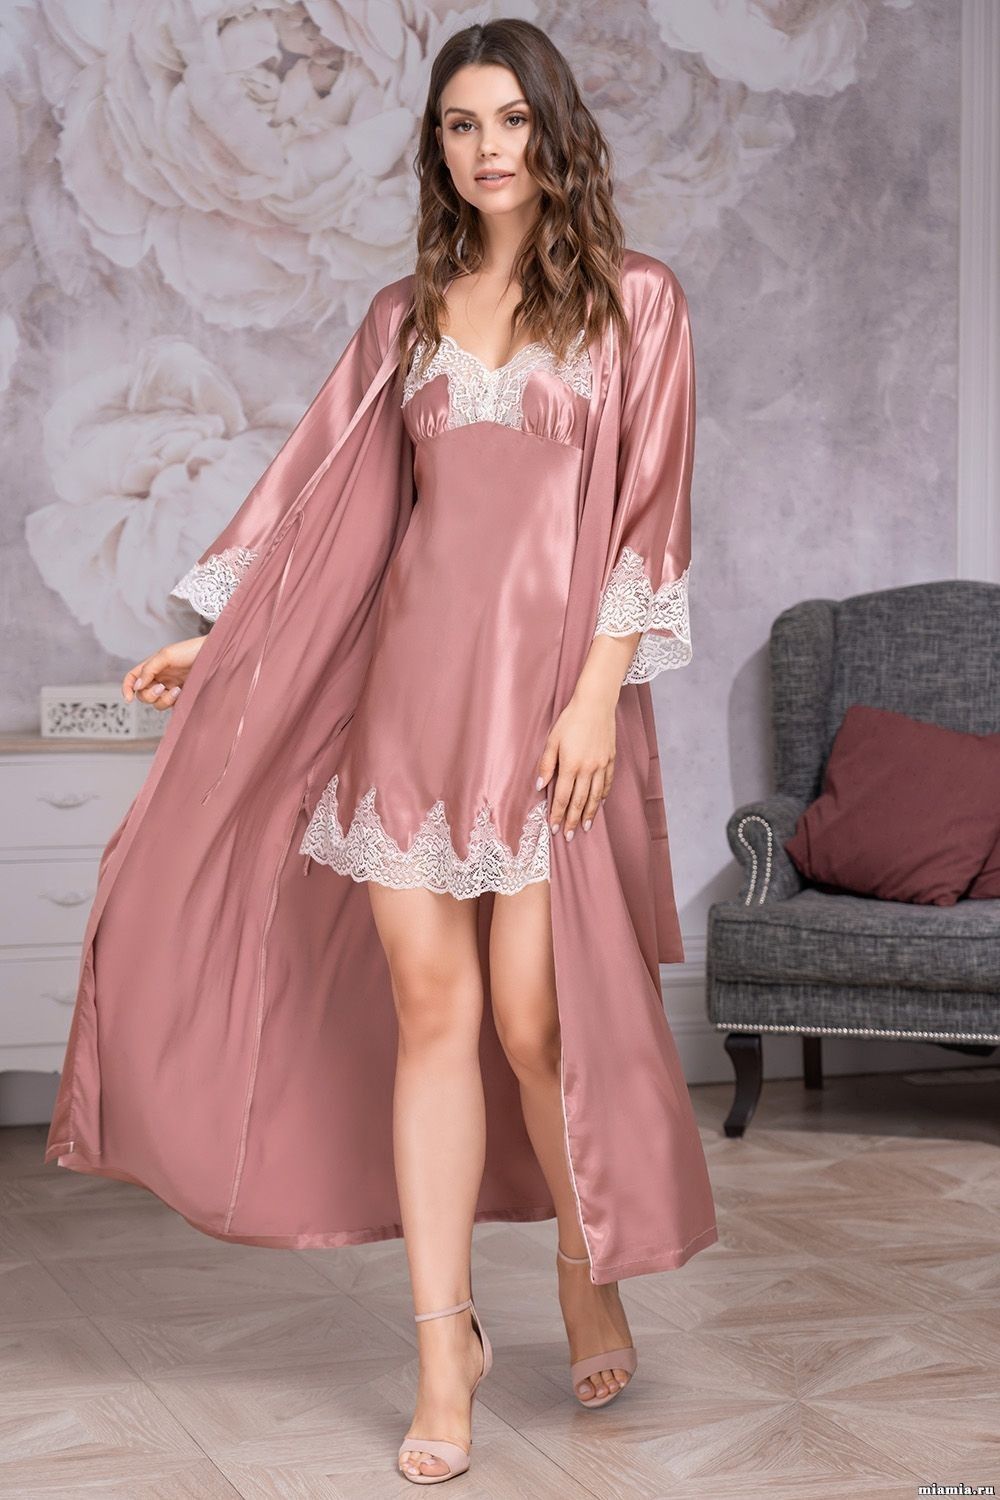 gowns sleepwear cheap online